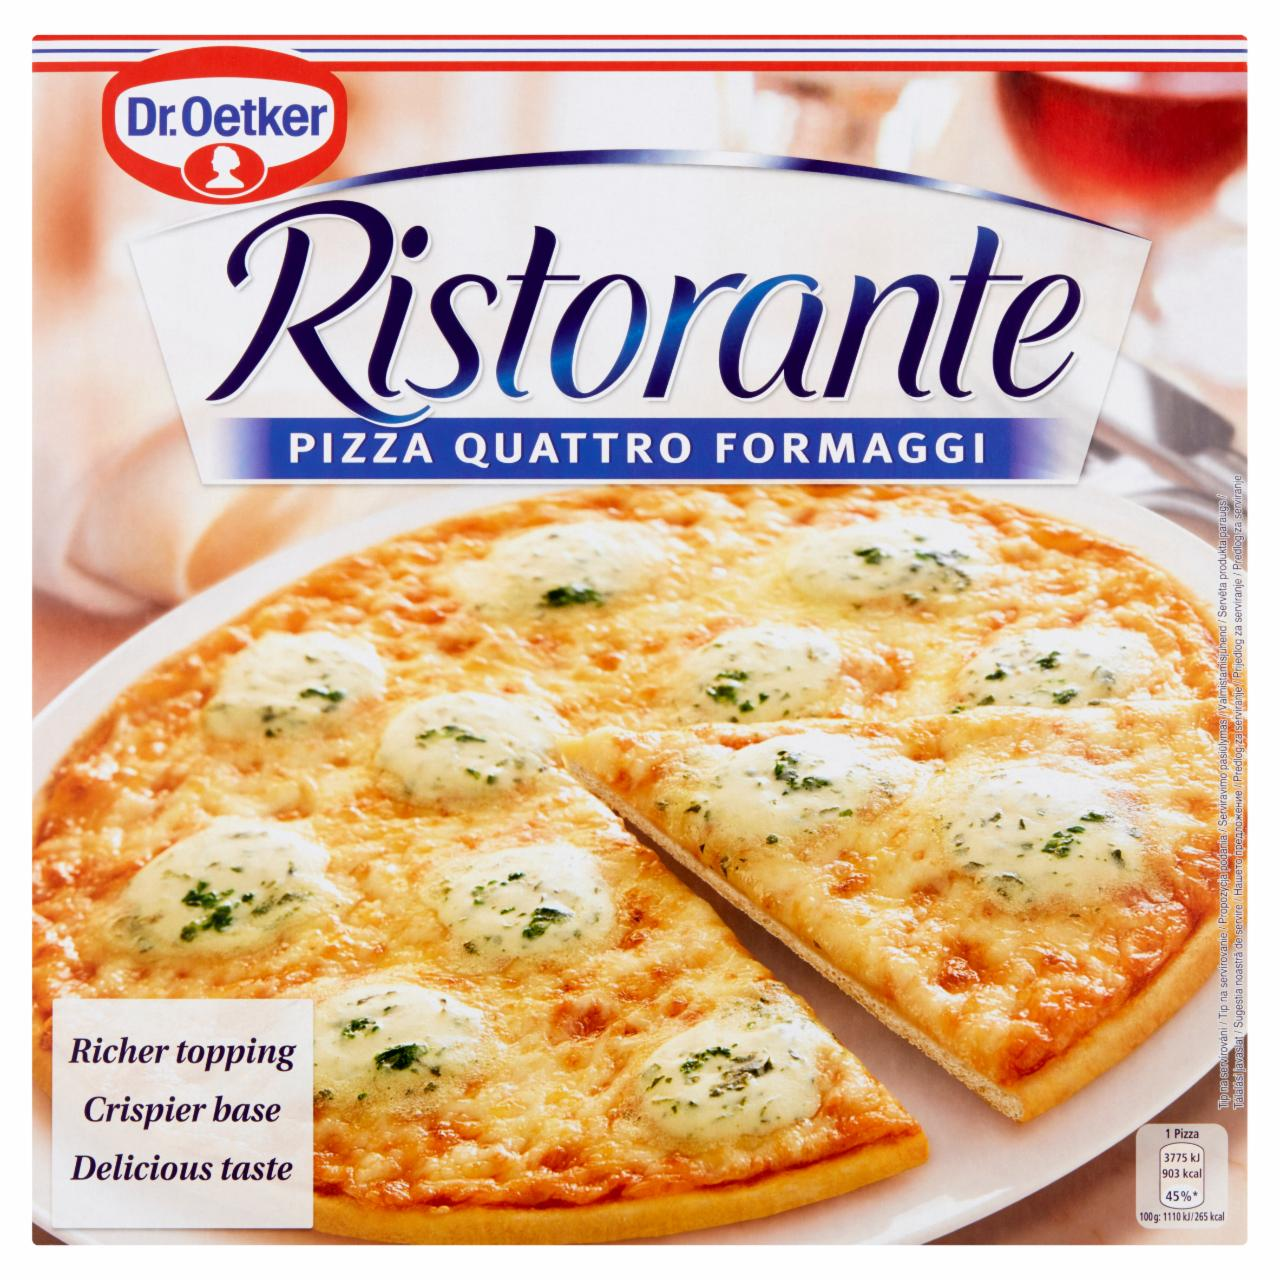 Képek - Ristorante pizza quattro formaggi (gyorsfagyasztott négysajtos pizza) Dr.Oetker